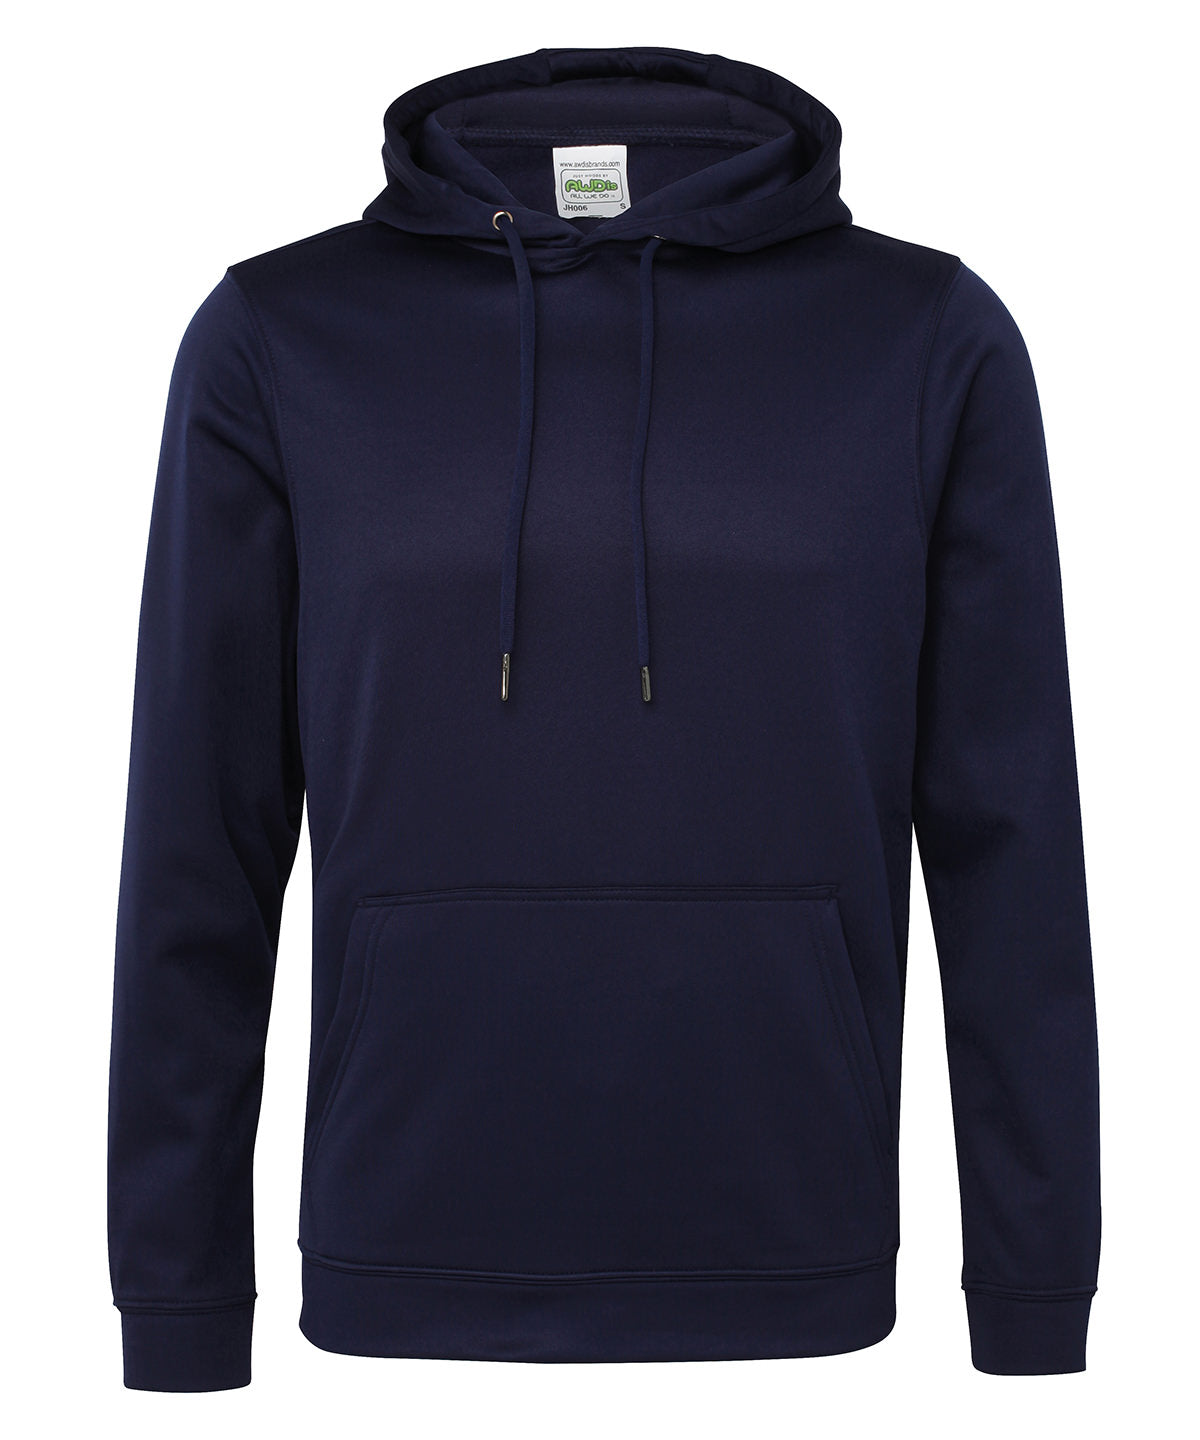 Personalised Hoodies - Dark Blue AWDis Just Hoods Sports polyester hoodie